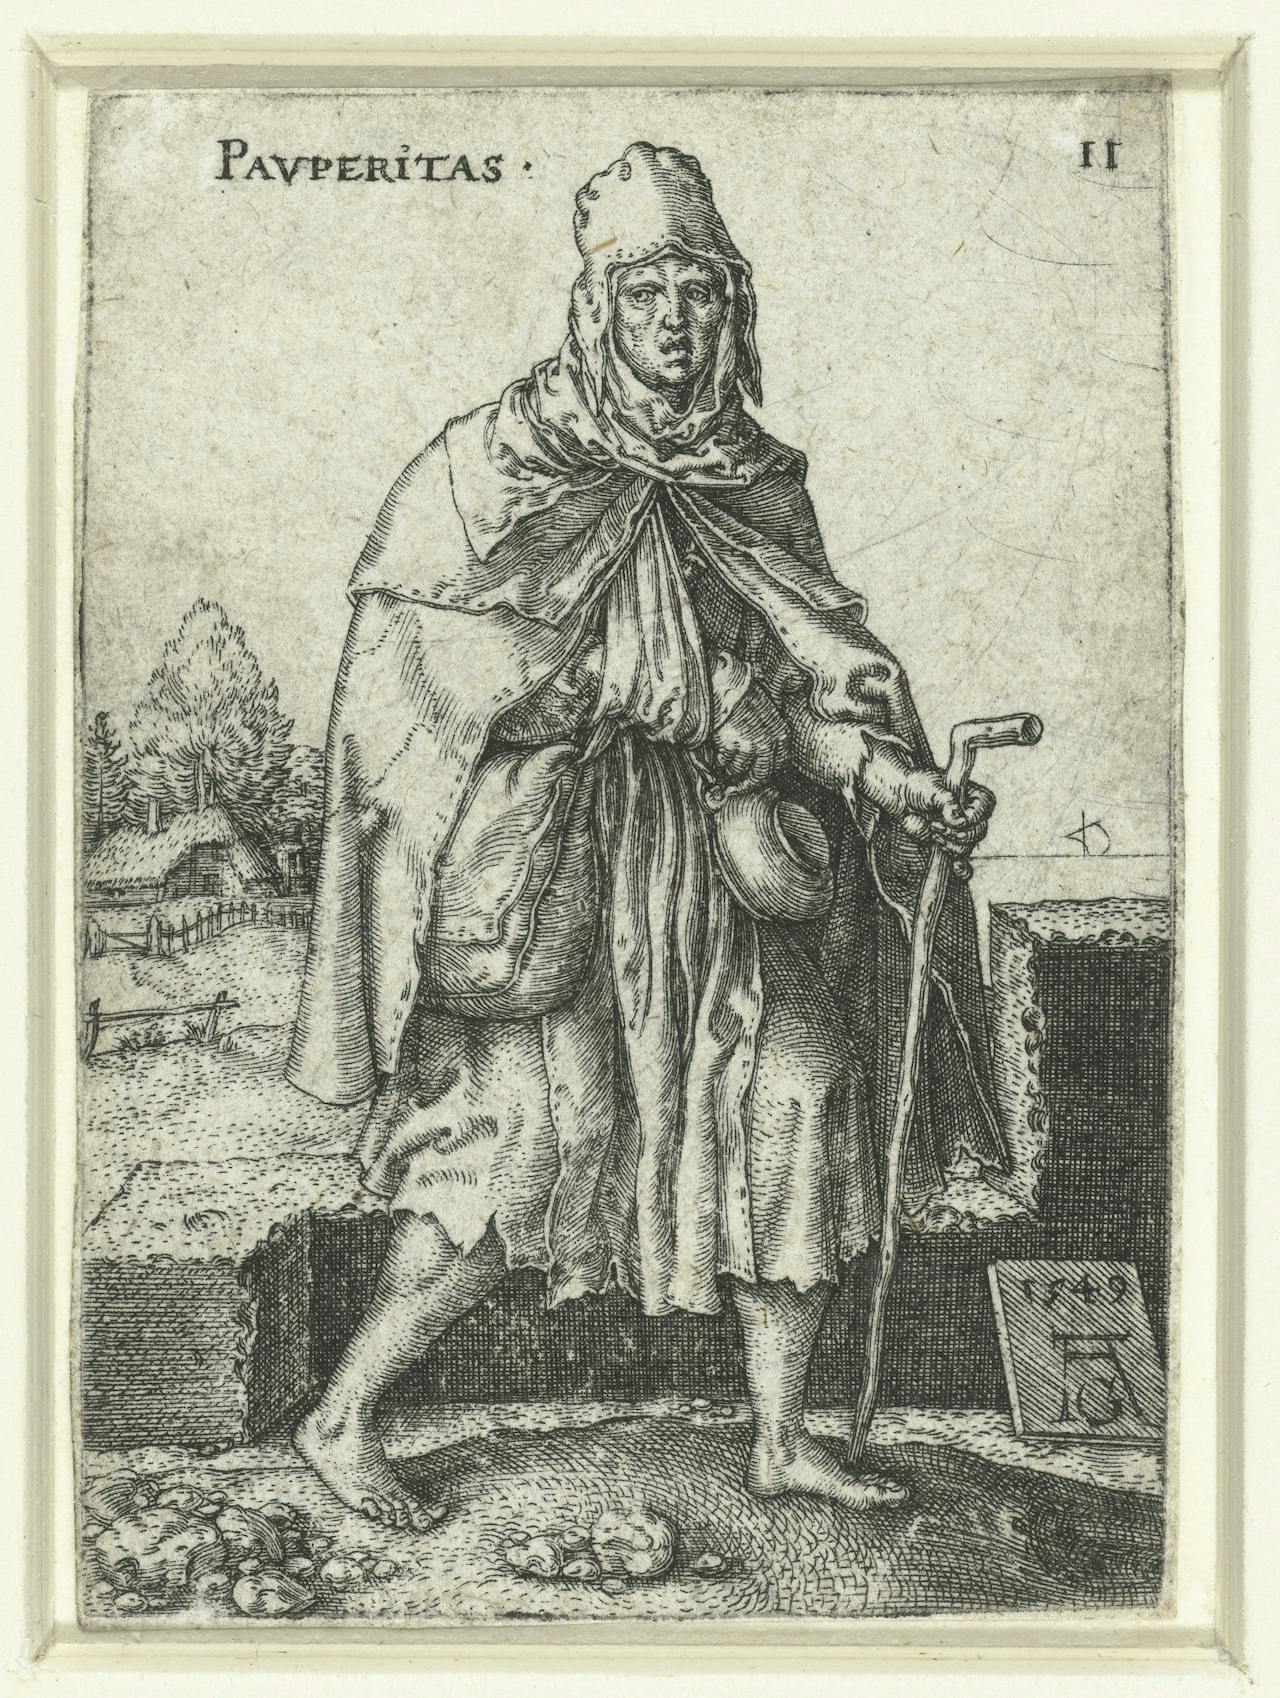 Een oude tekening van een oud persoon met een stok en mantel.